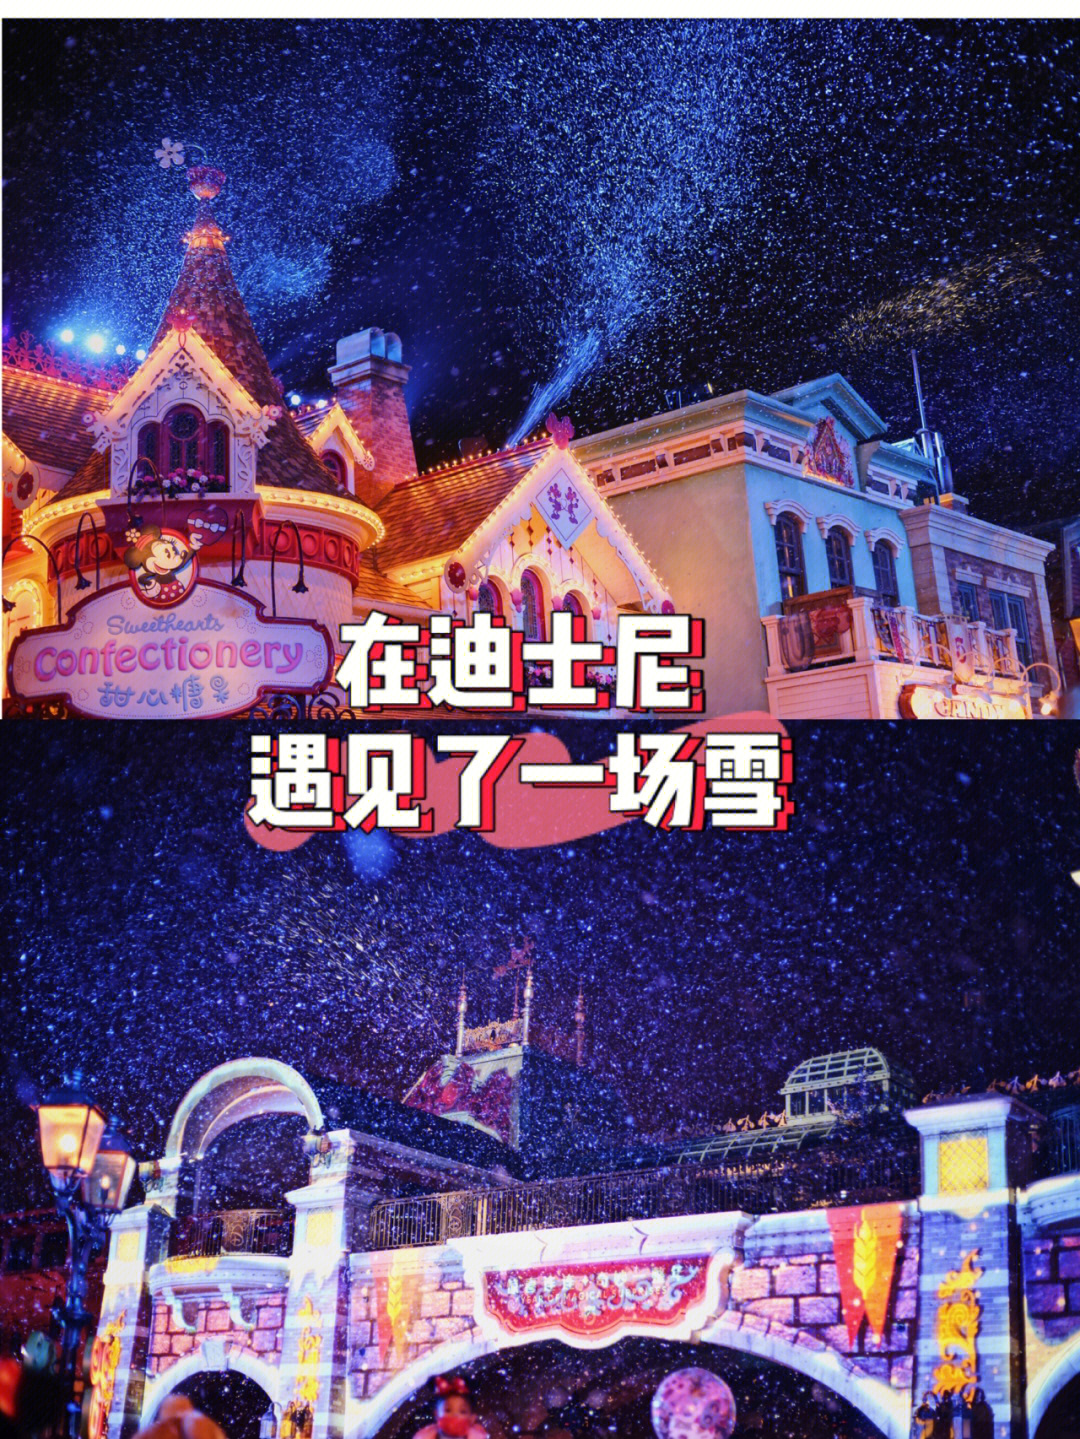 在迪士尼遇到了上海的第一场雪76迪士尼圣诞